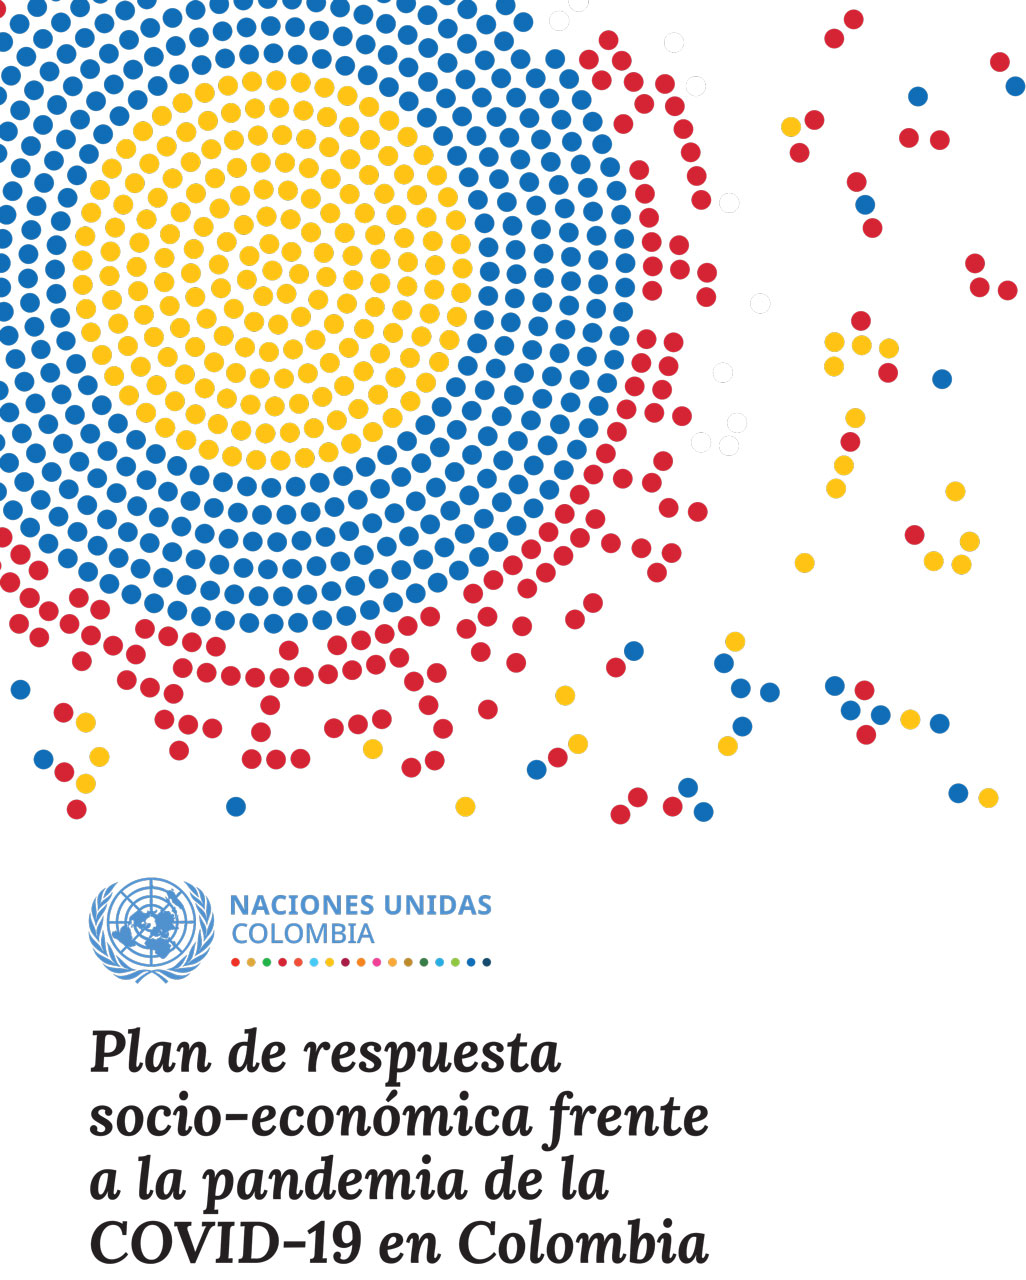 Plan de respuesta socio-económica frente a la pandemia de la COVID-19 en Colombia